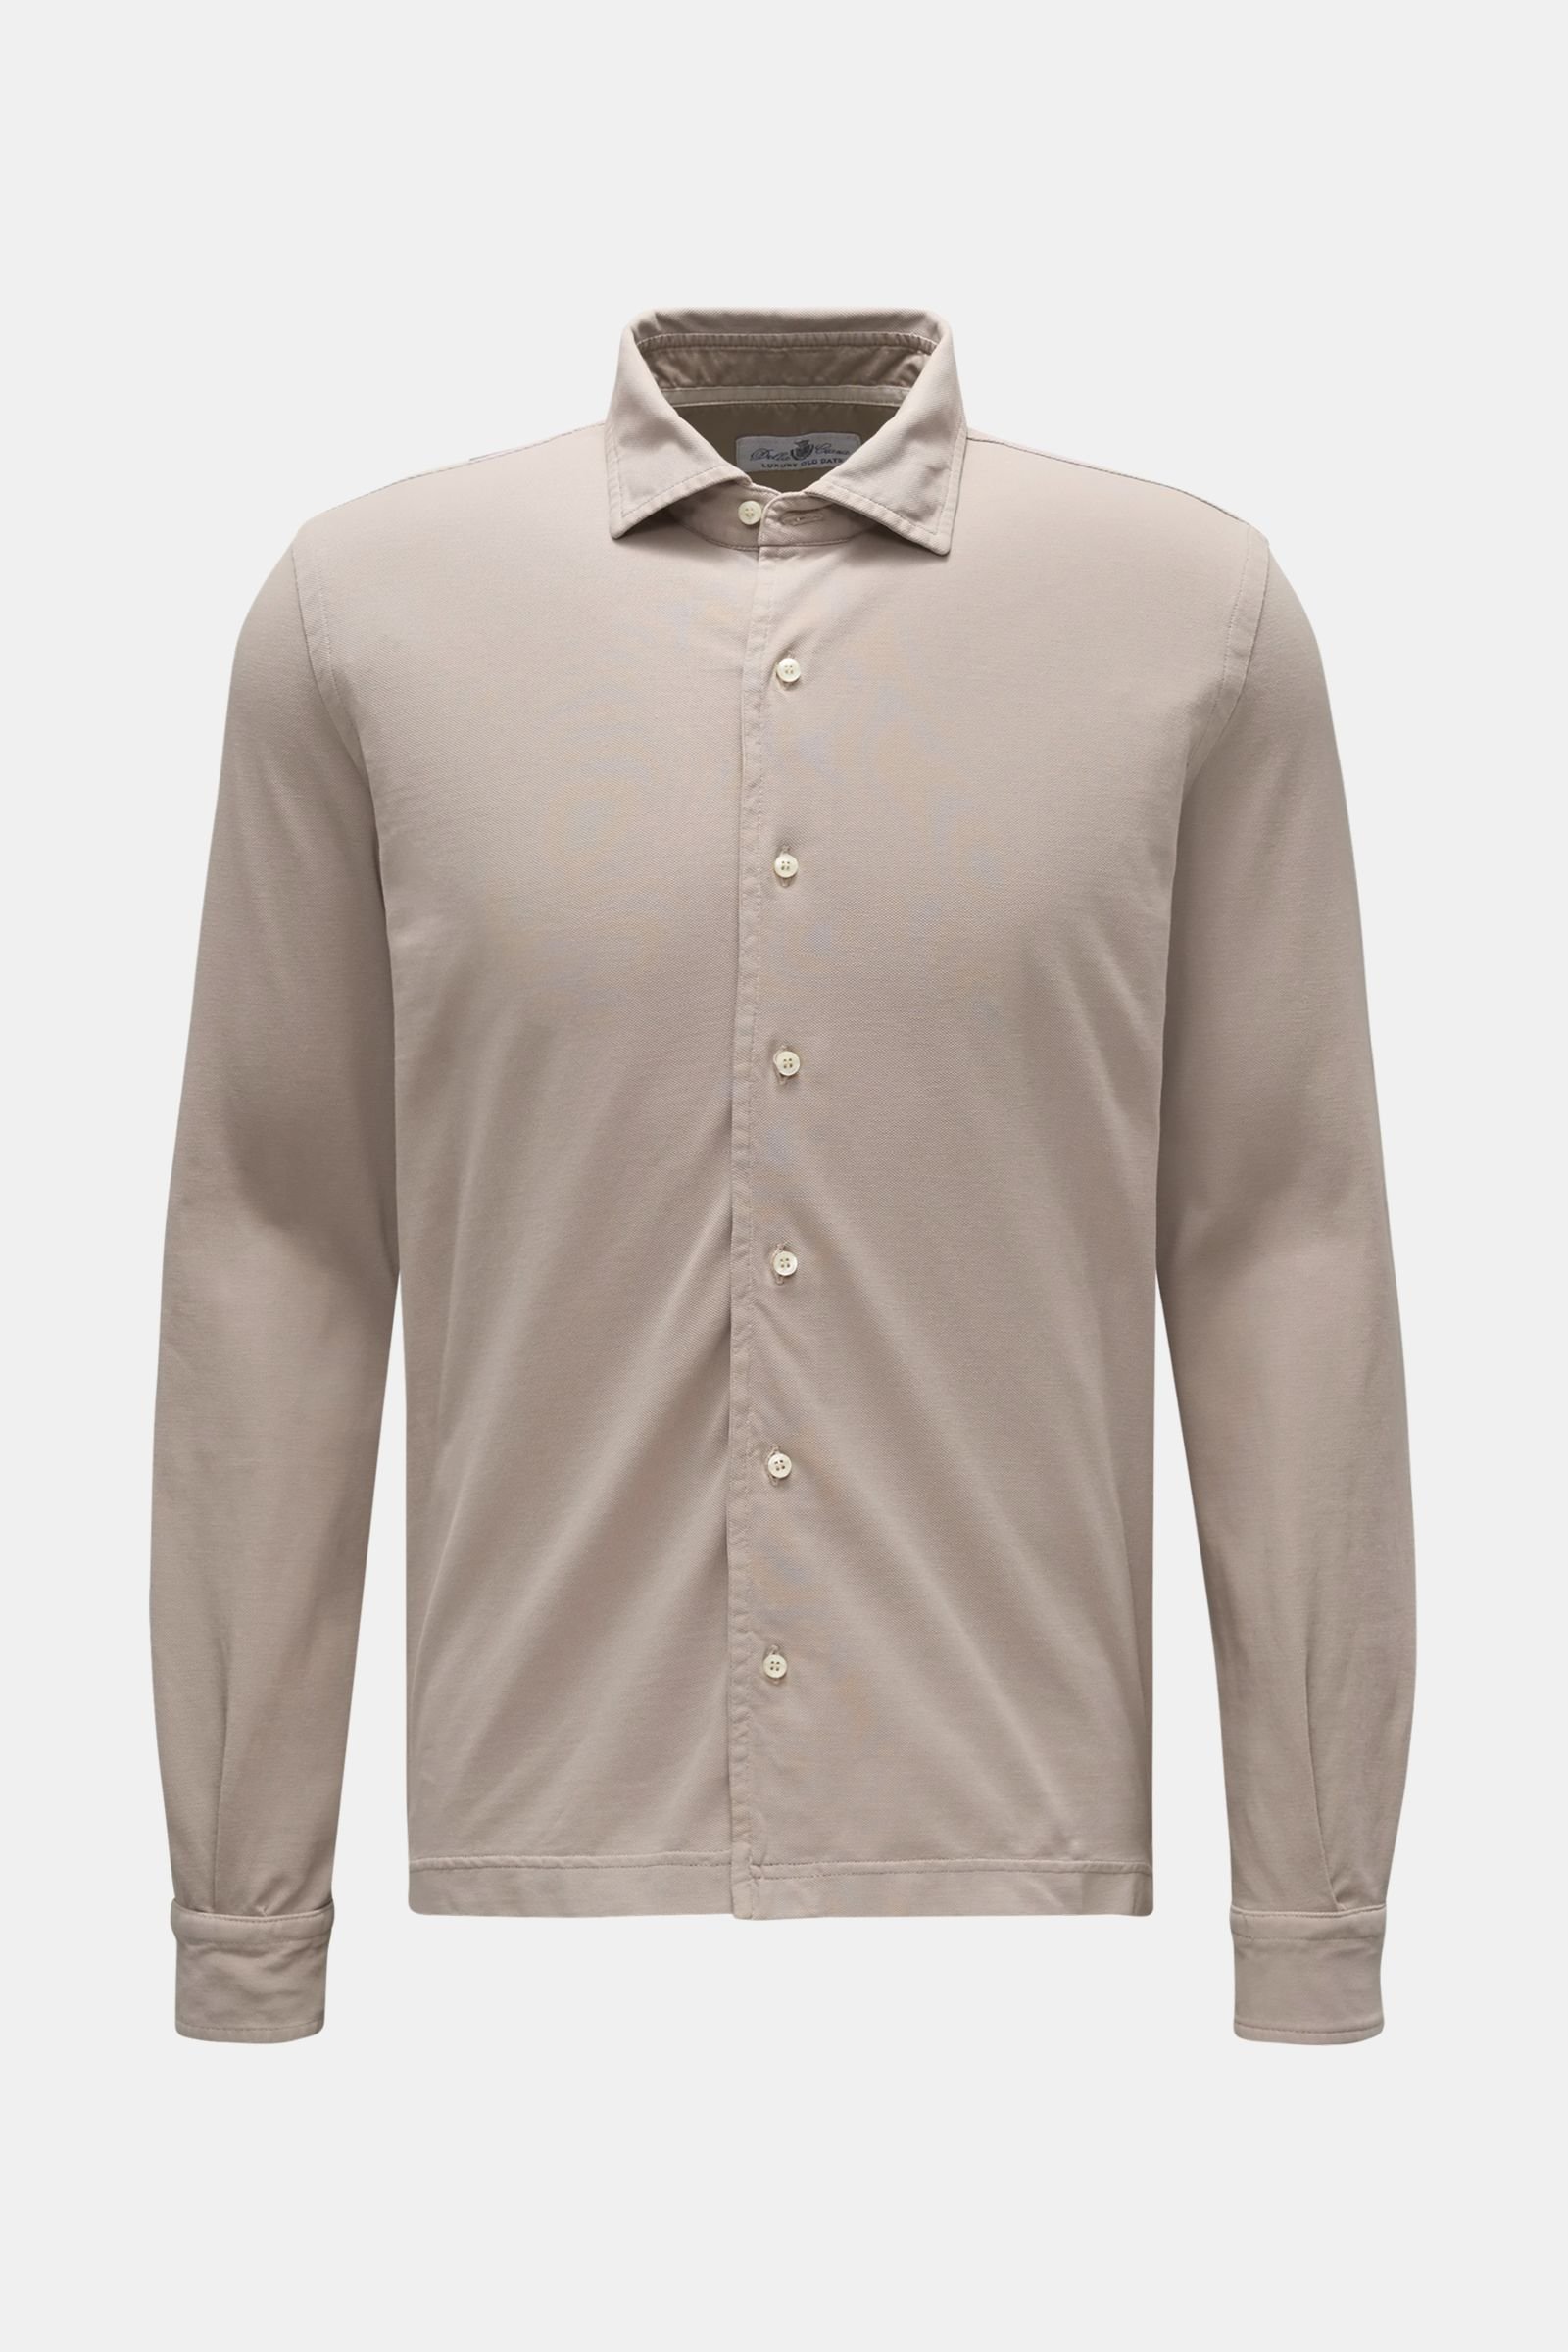 Piqué shirt shark collar grey-brown